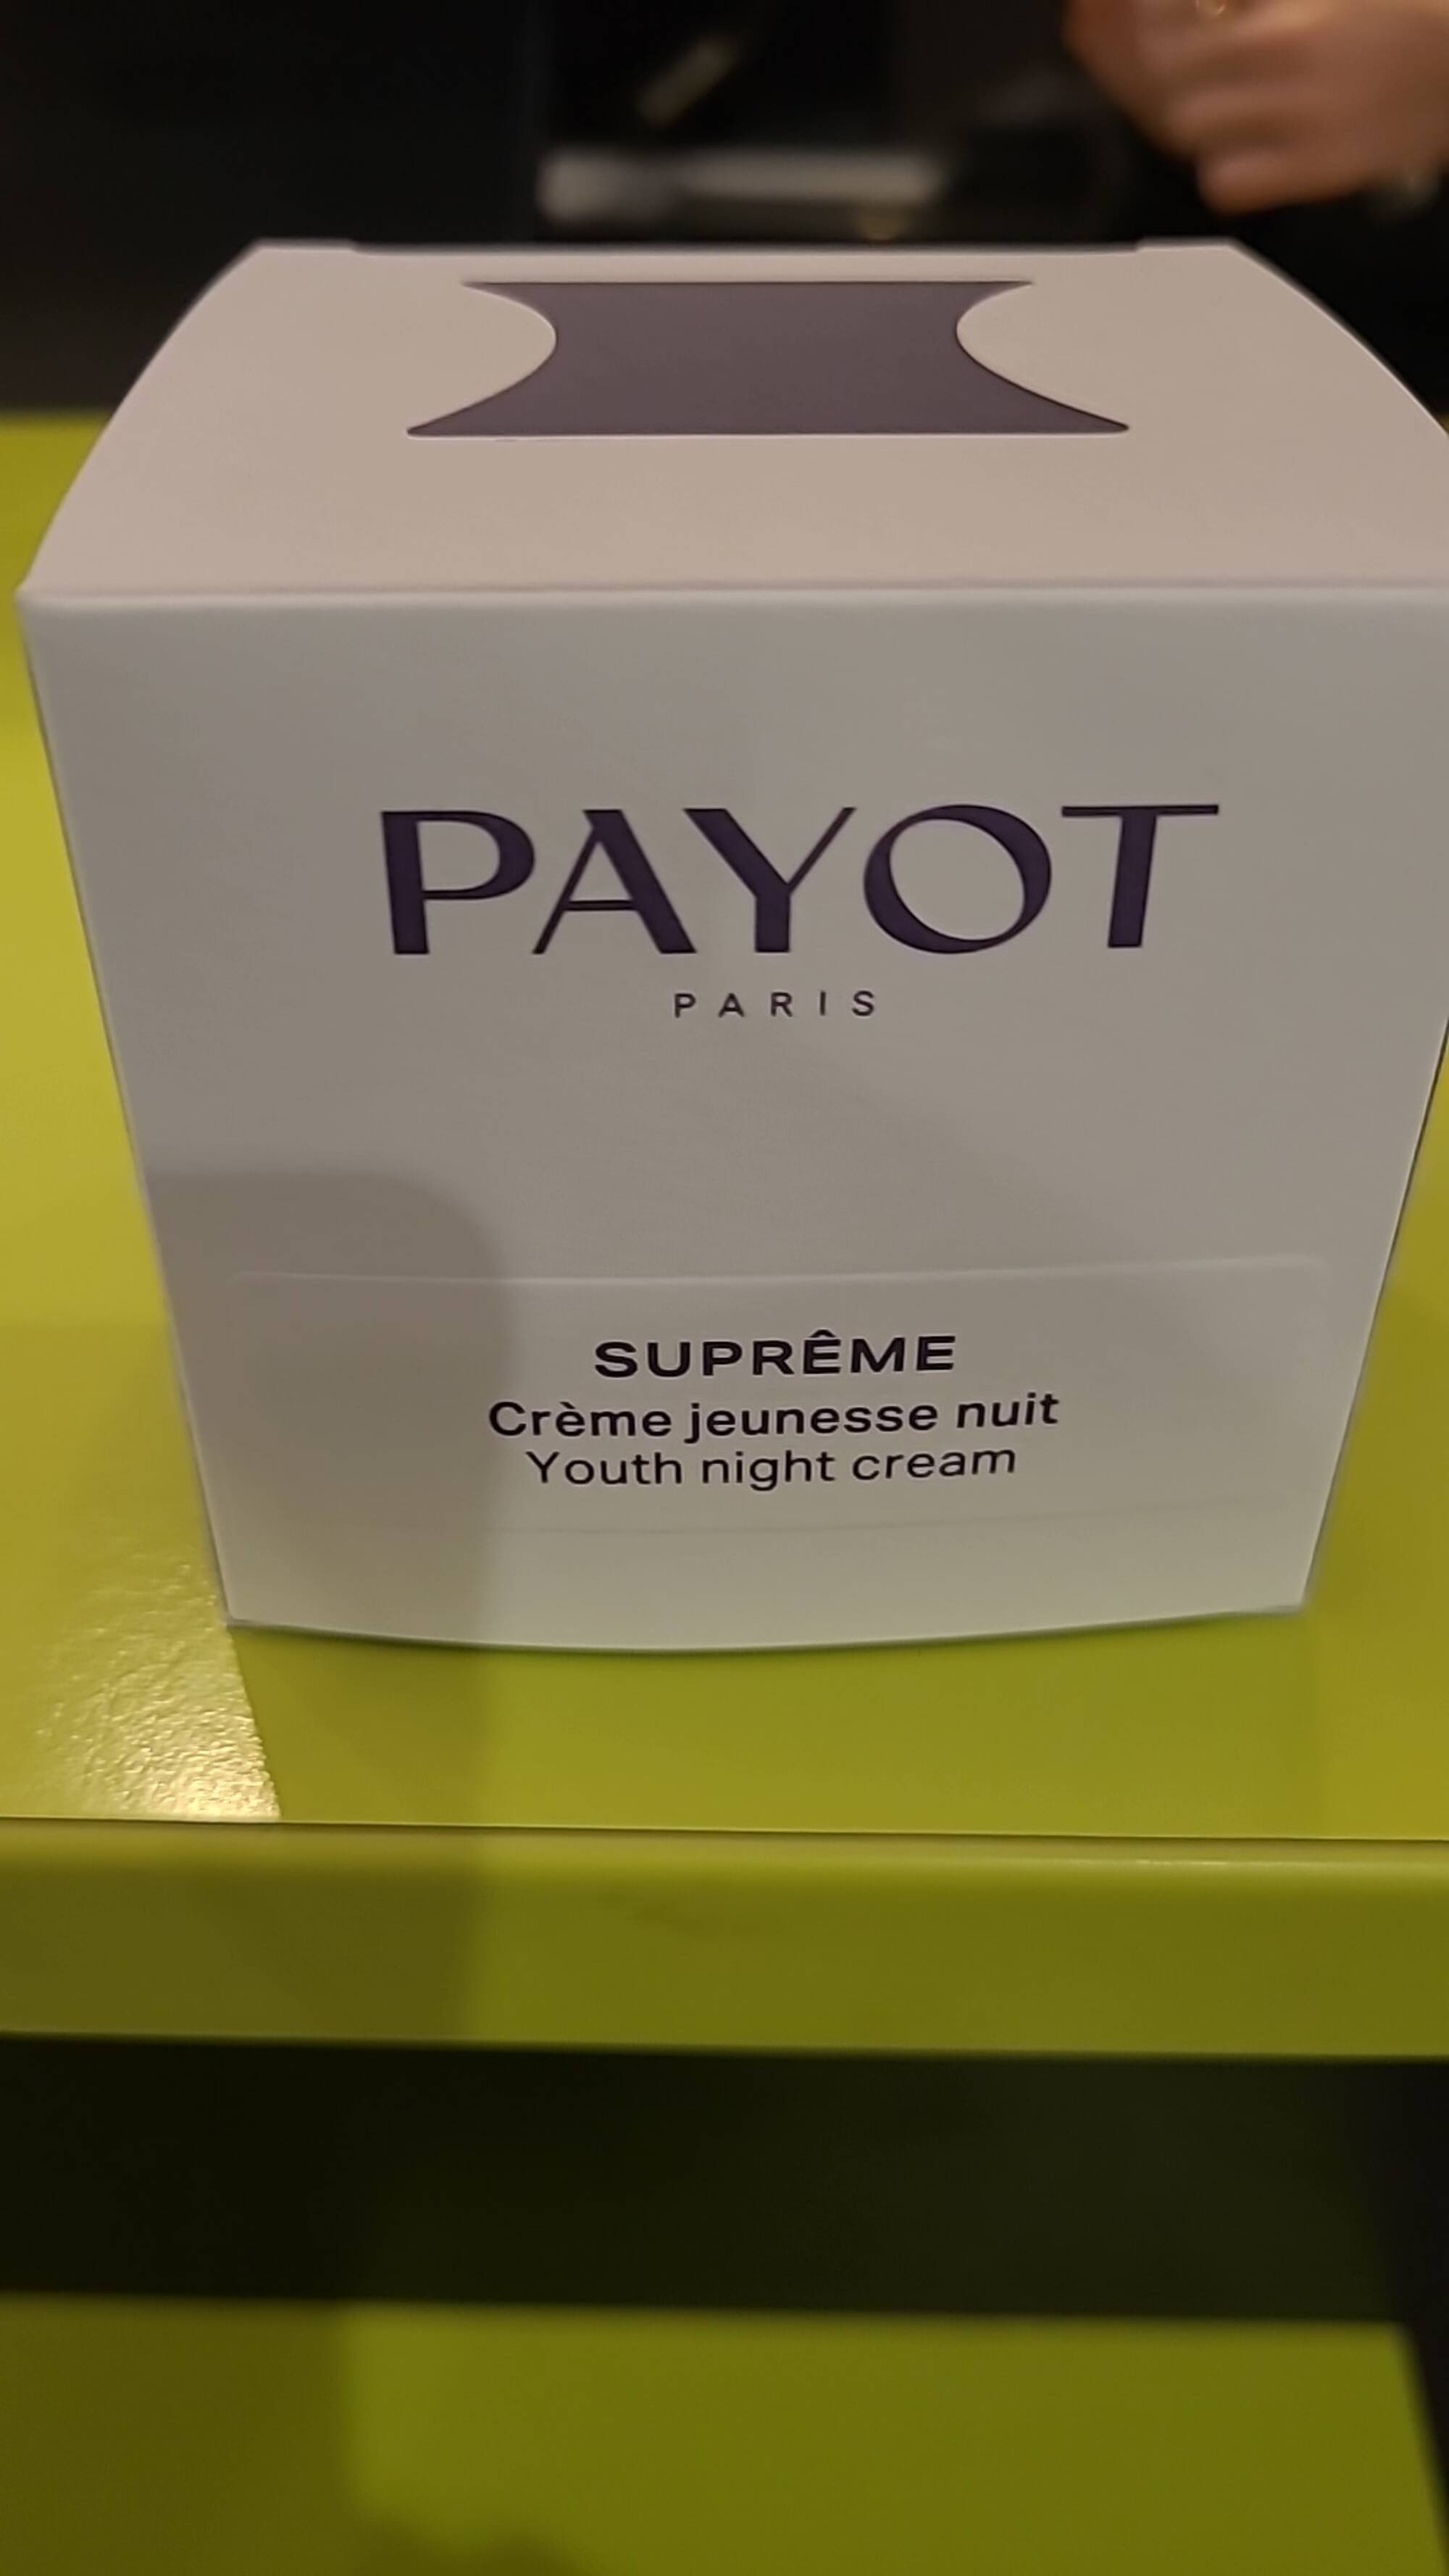 PAYOT - Suprême - Crème jeunesse nuit